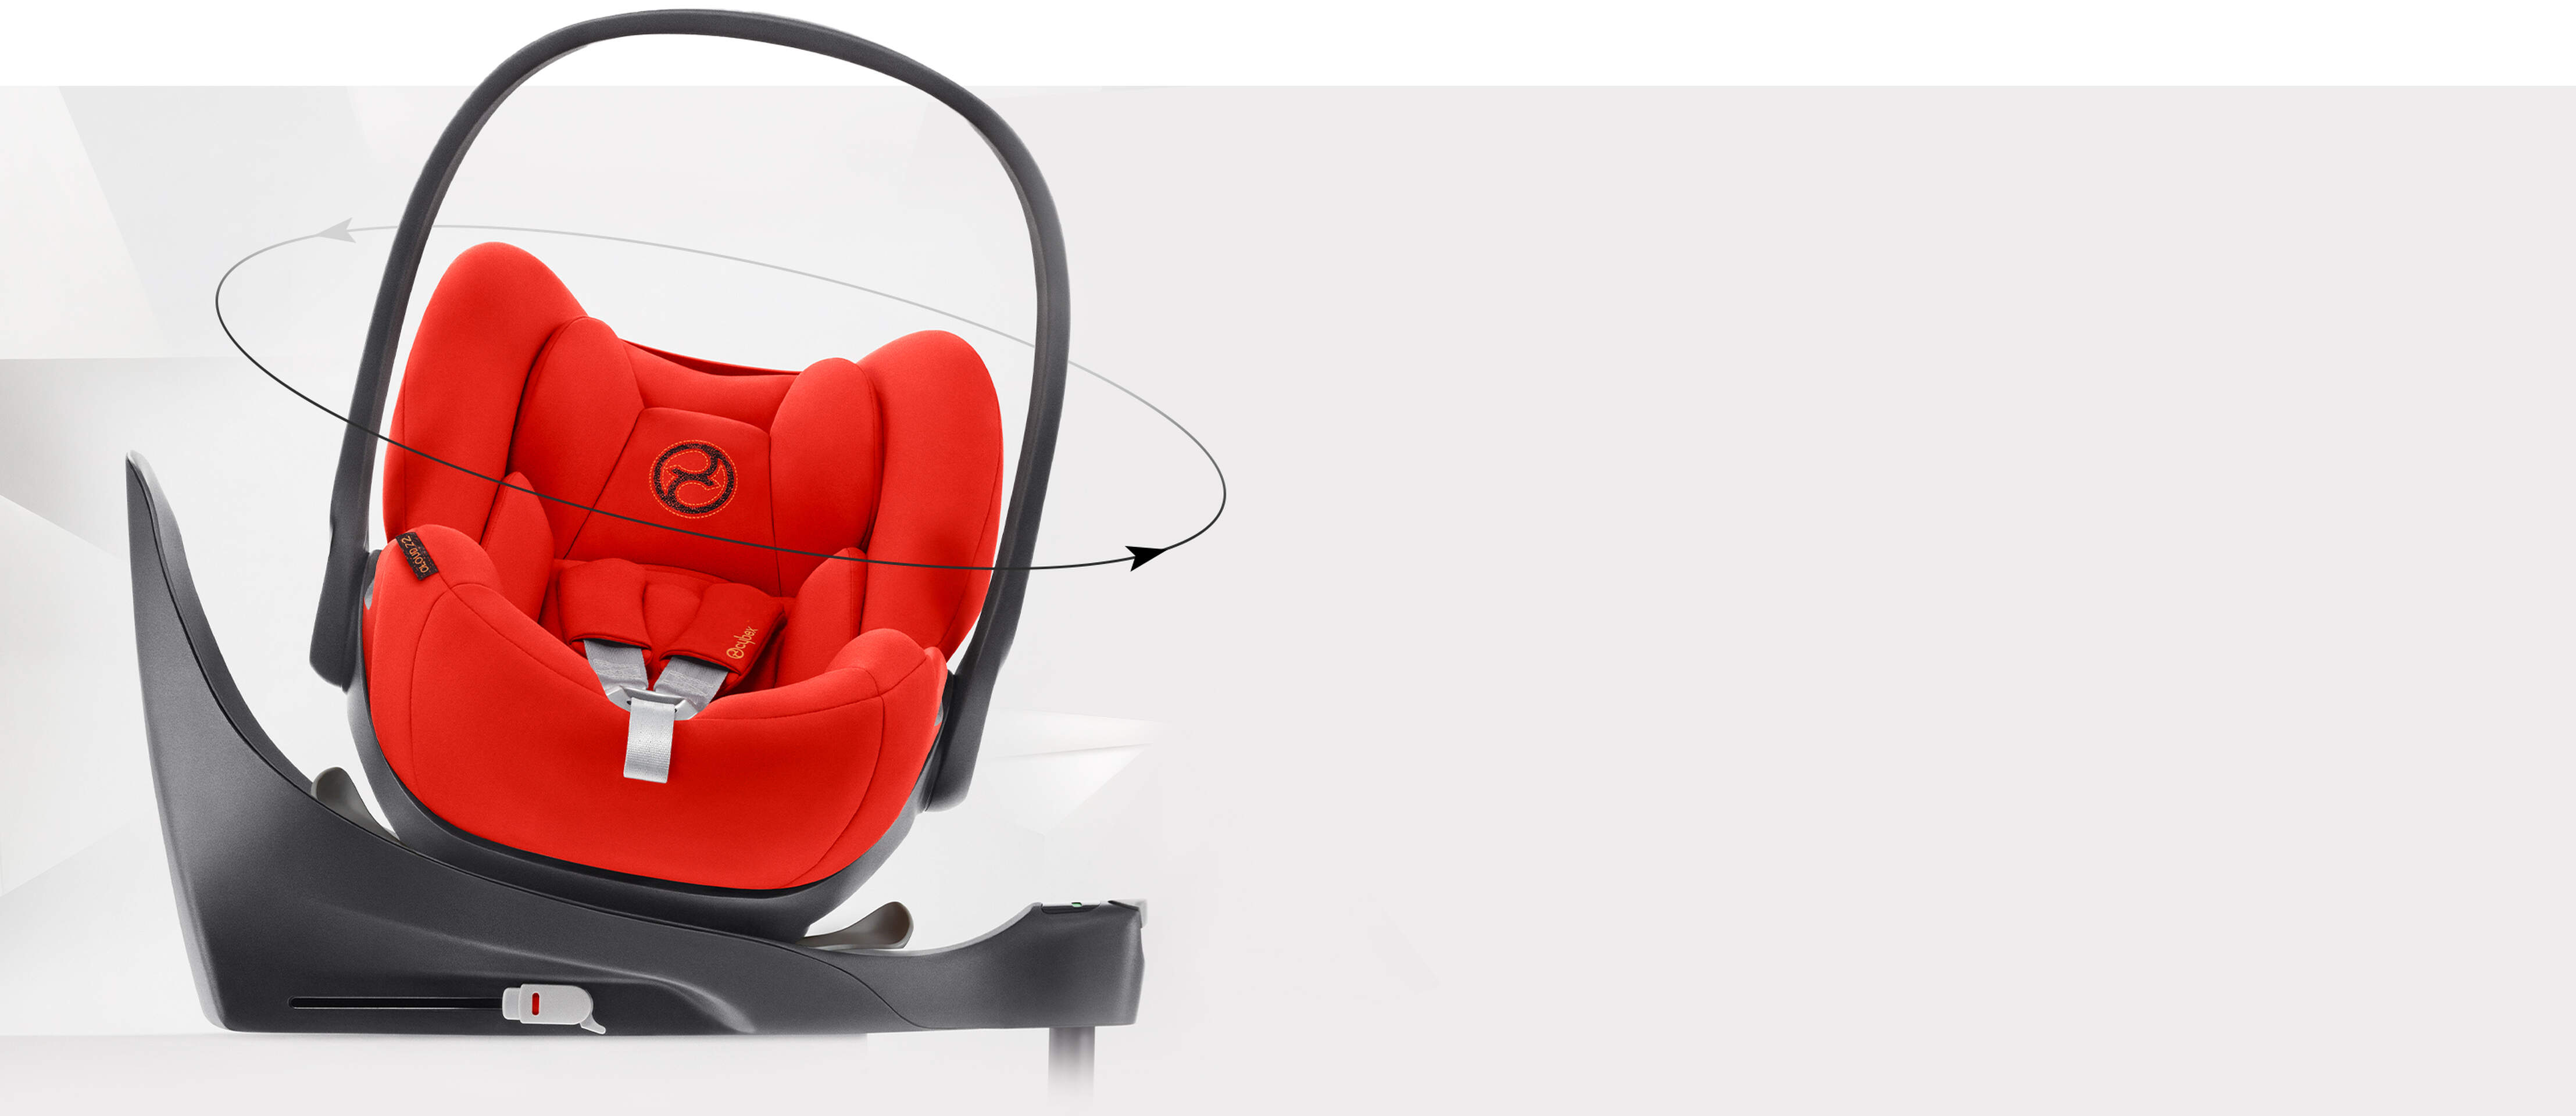 Cloud Z2 i-Size Car Seat by CYBEX Platinum